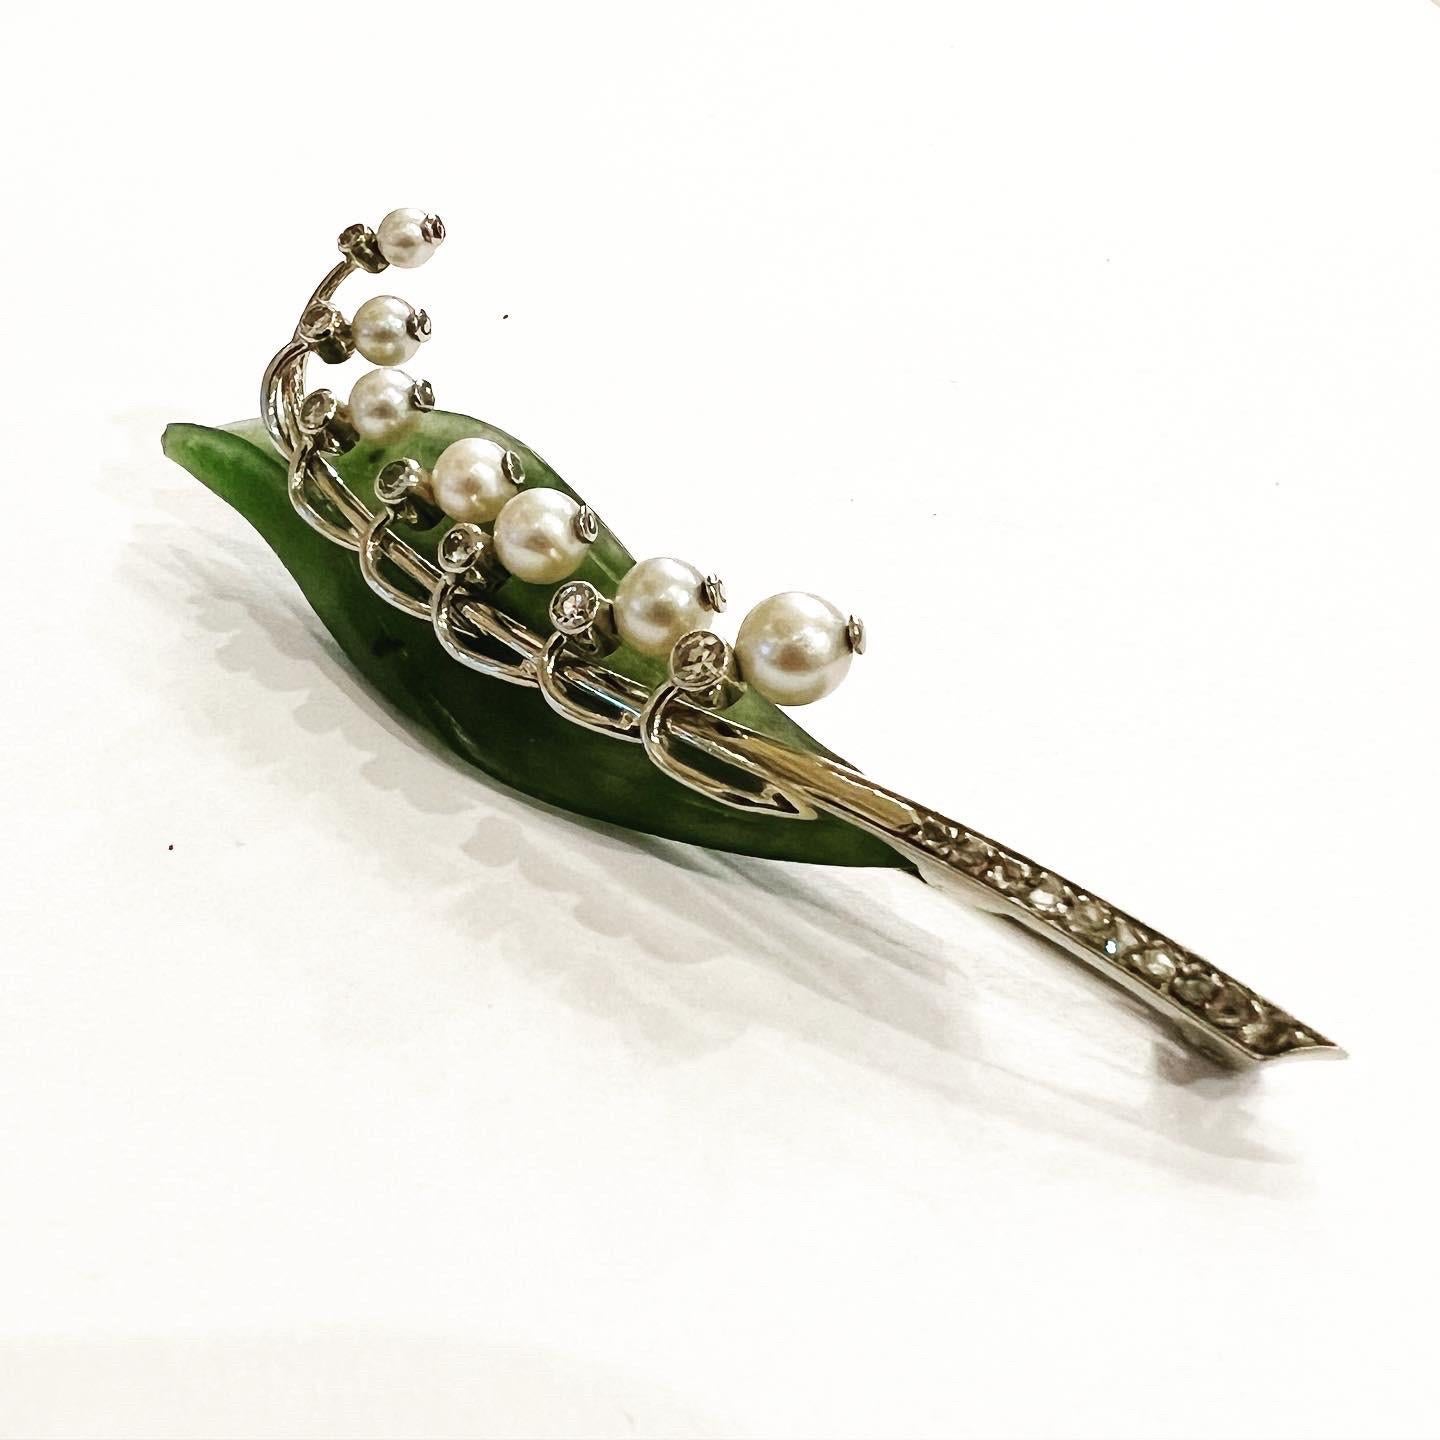 Diese erstaunliche Brosche ist fein modelliert als eine schöne Maiglöckchen.
Das grüne Blatt ist naturgetreu aus einem einzigen Stück Nephrit-Jade geschnitzt, und die Blumen sind mit Perlen und Diamanten besetzt.
Die Struktur ist aus 14 Karat Gold